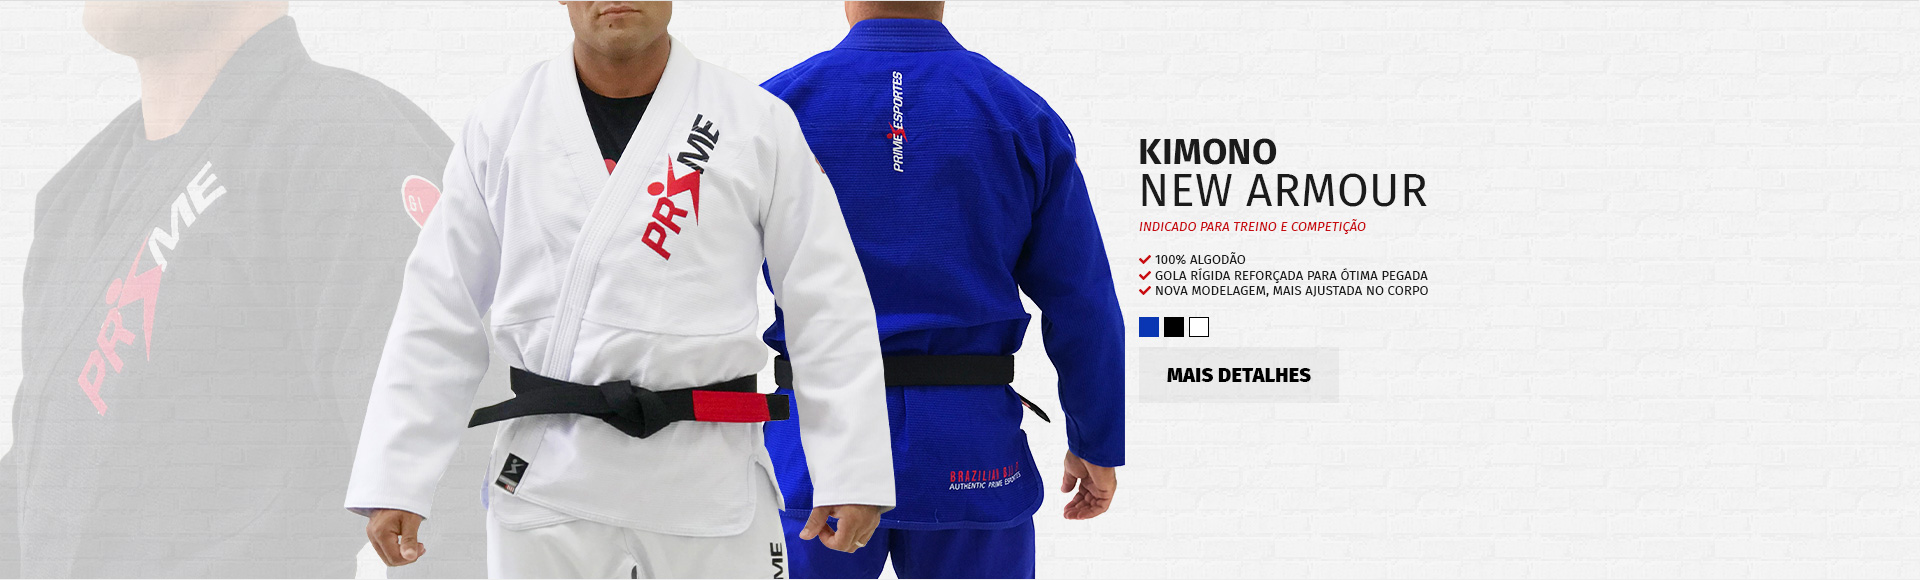 Kimono New Armour